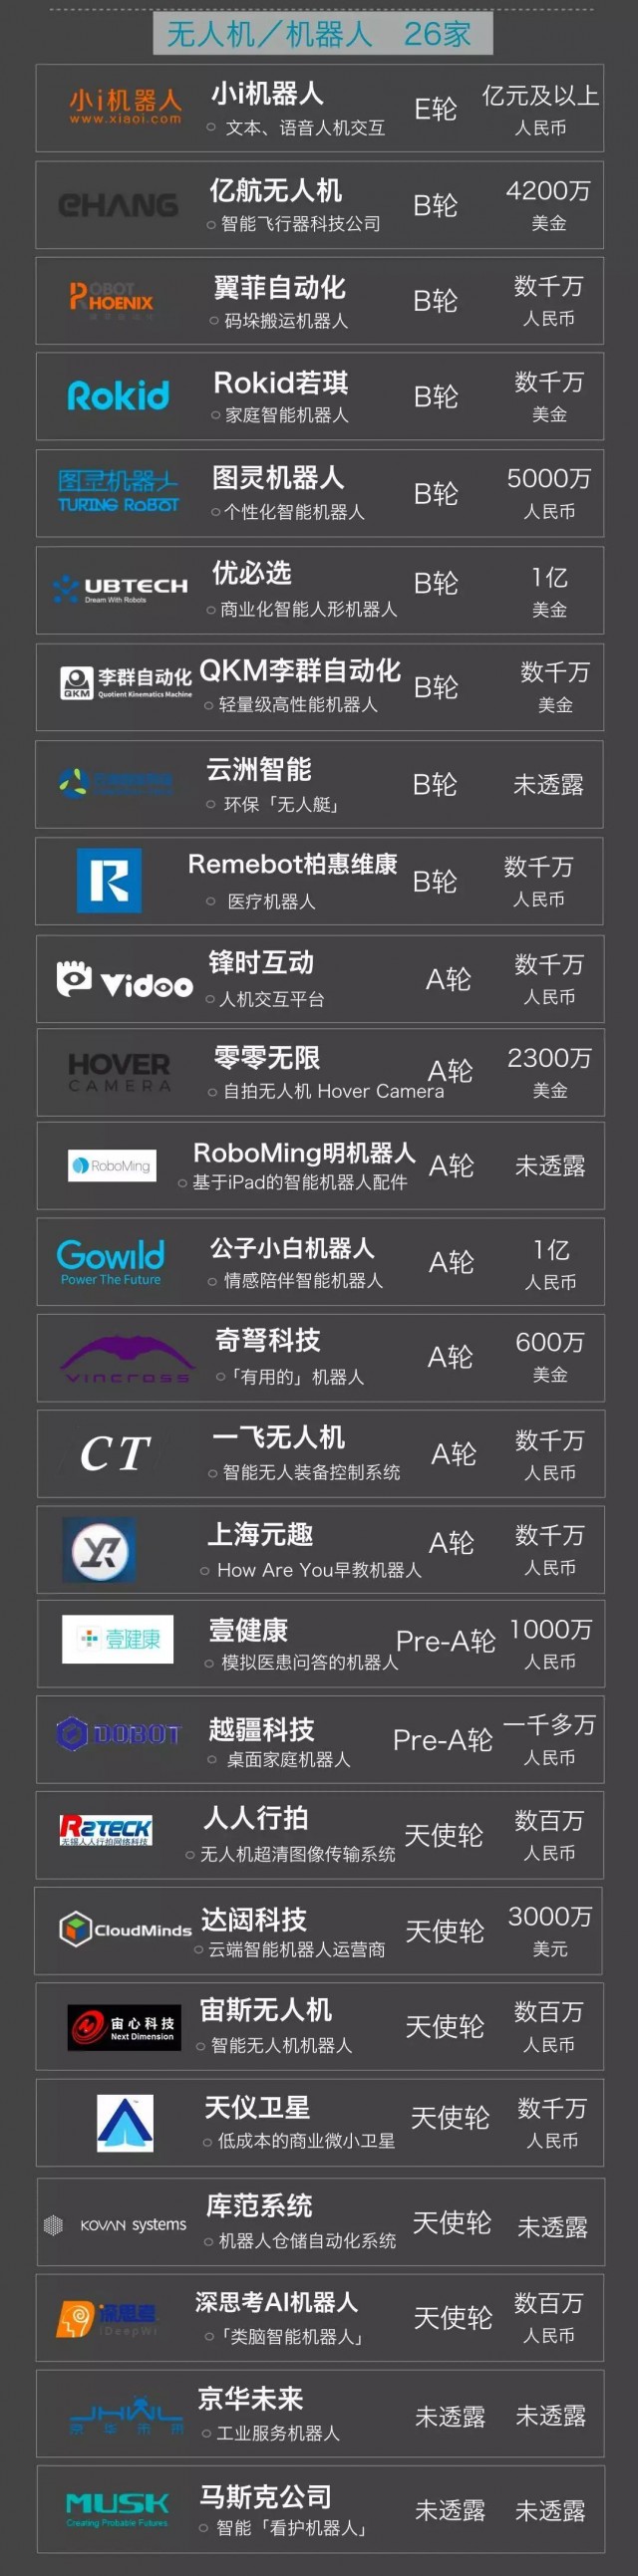 【重磅榜单】2016中国最具投资价值人工智能项目Top 100 | Xtecher研究院